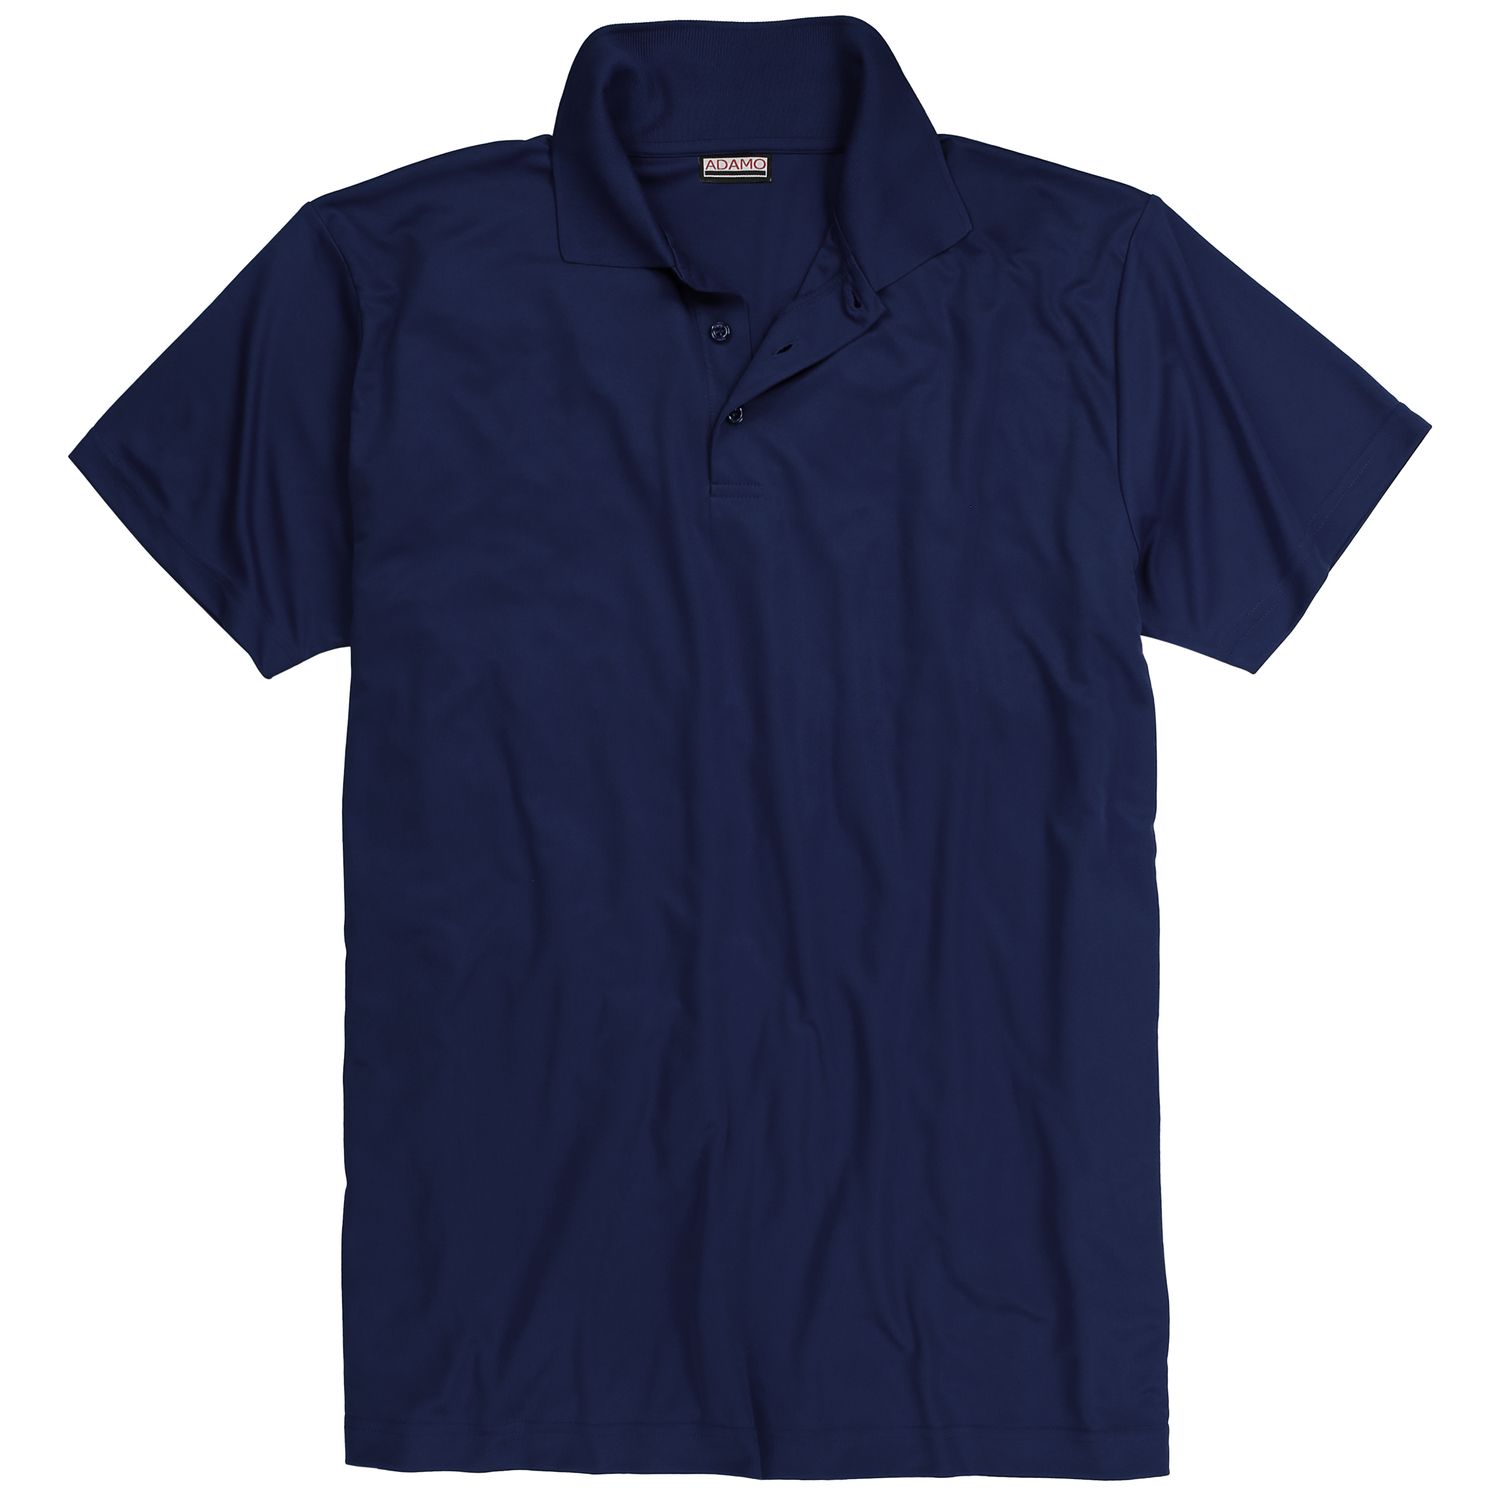 Herren Funktions Polo Shirt Modell Marius COMFORT FIT von Adamo kurzärmlig in navy bis Übergröße 12XL